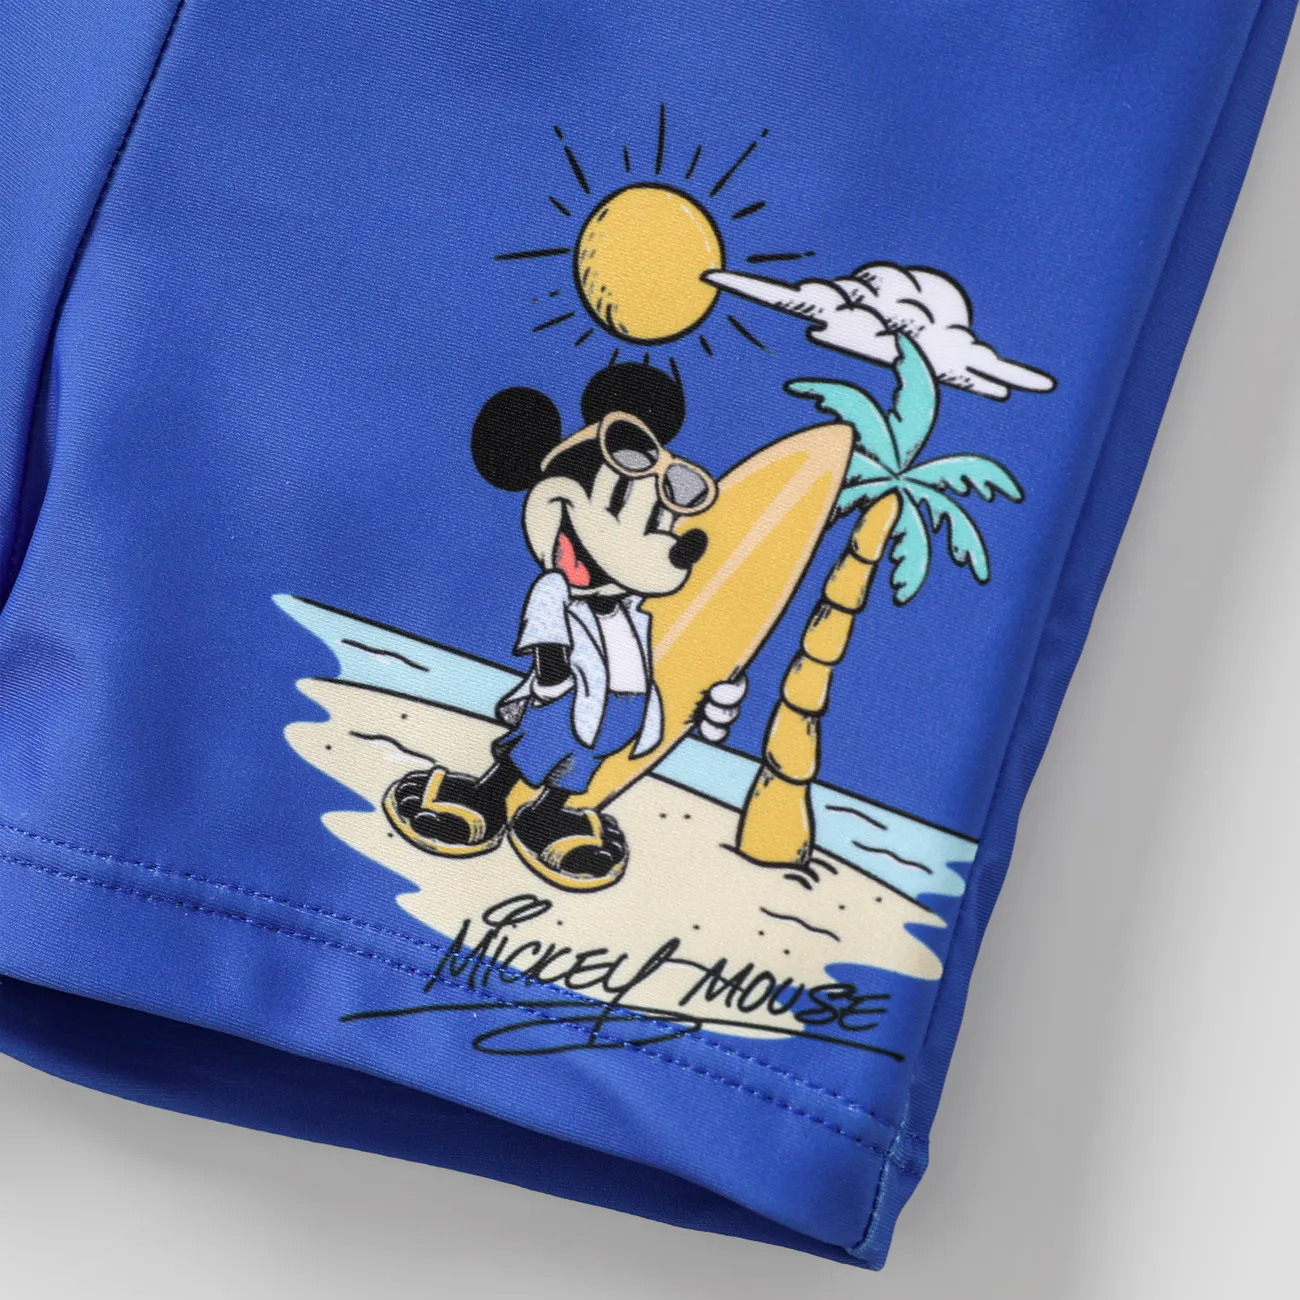 Disney Mickey and Friends عيد القيامة قطعتان للجنسين سحّاب طفولي ملابس سباحة أزرق big image 1